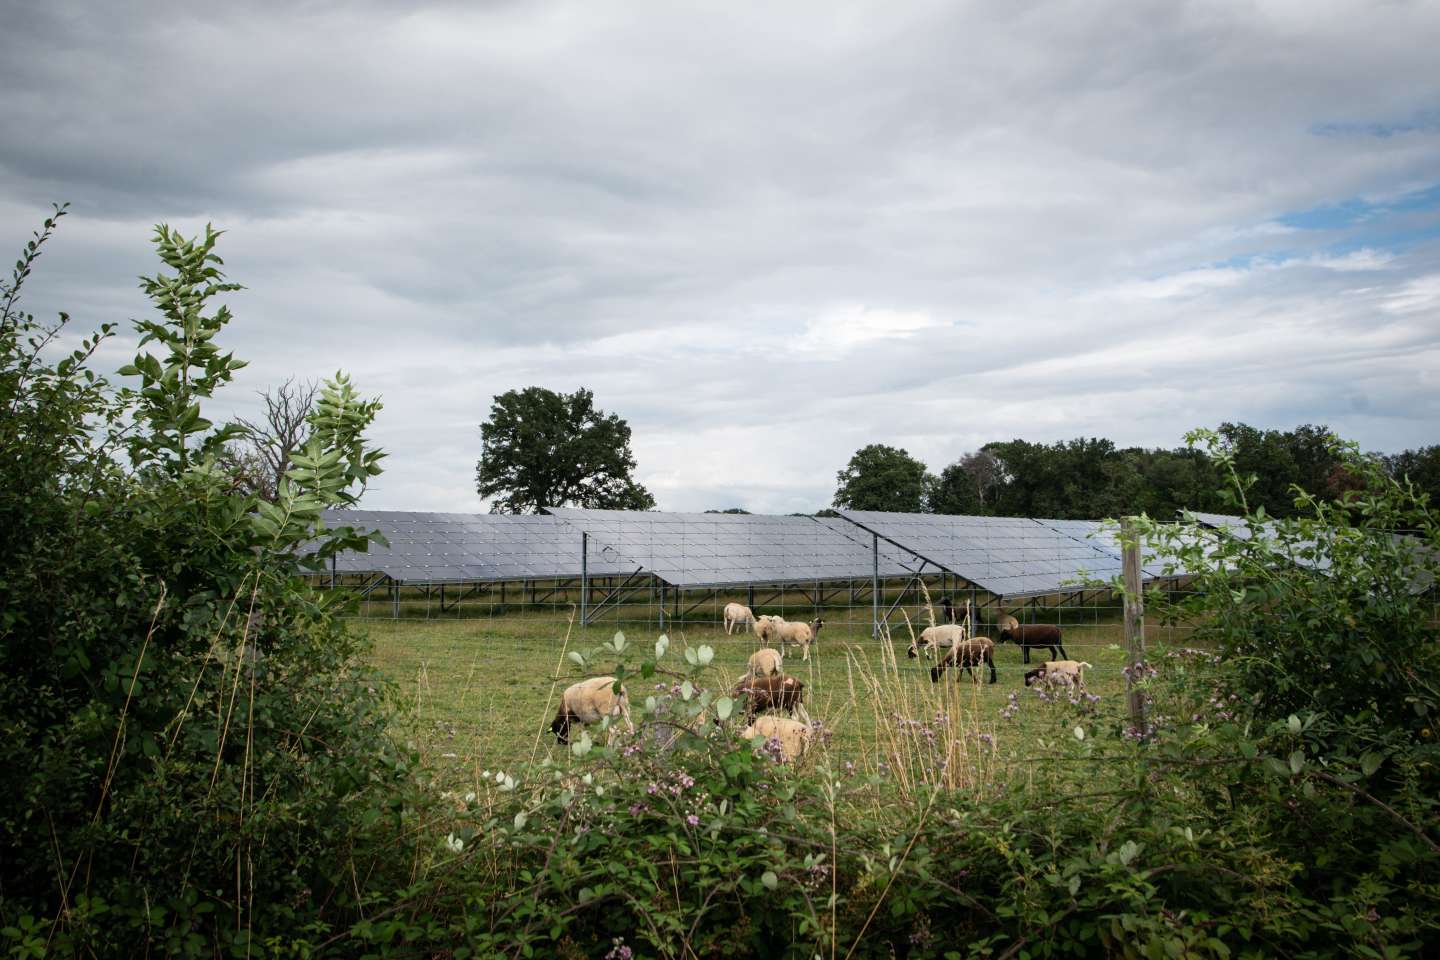 Des fermes misent sur le photovoltaïque pour réduire leur dépendance